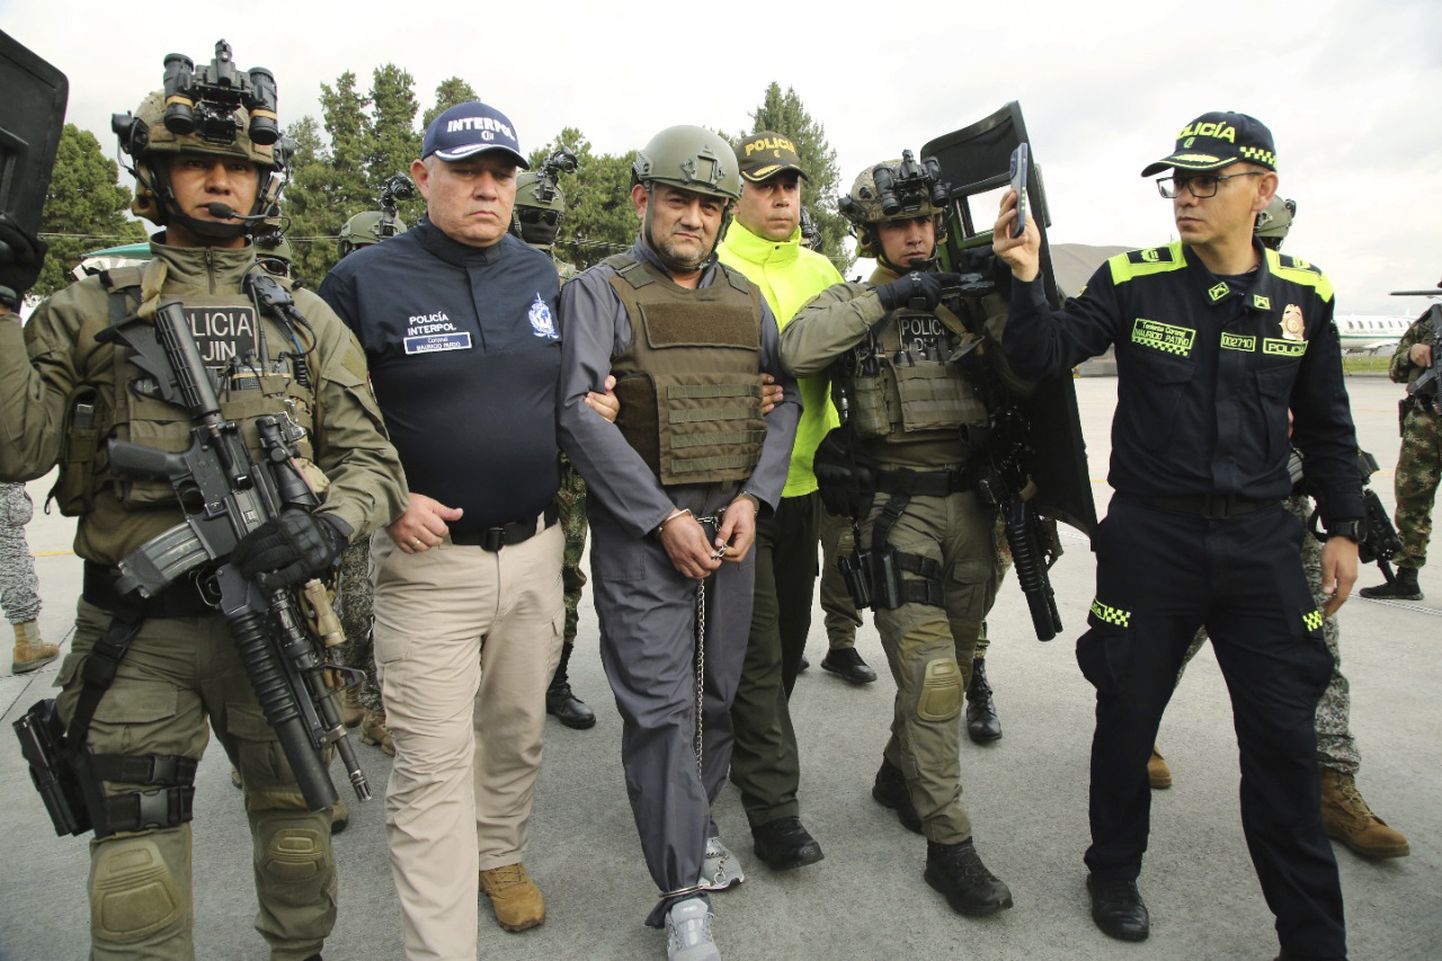 Colombia presidendi kantselei pressiteenistuse fotol eskordivad politseinikud maailma üheks ohtlikumaks narkoparuniks peetavat Dario Antonio Úsugat hüüdnimega "Otoniel" sõjaväelennuväljale, kus andsid ta üle Ühendriikide uimastivastase võitluse ameti (DEA) ametnikele.